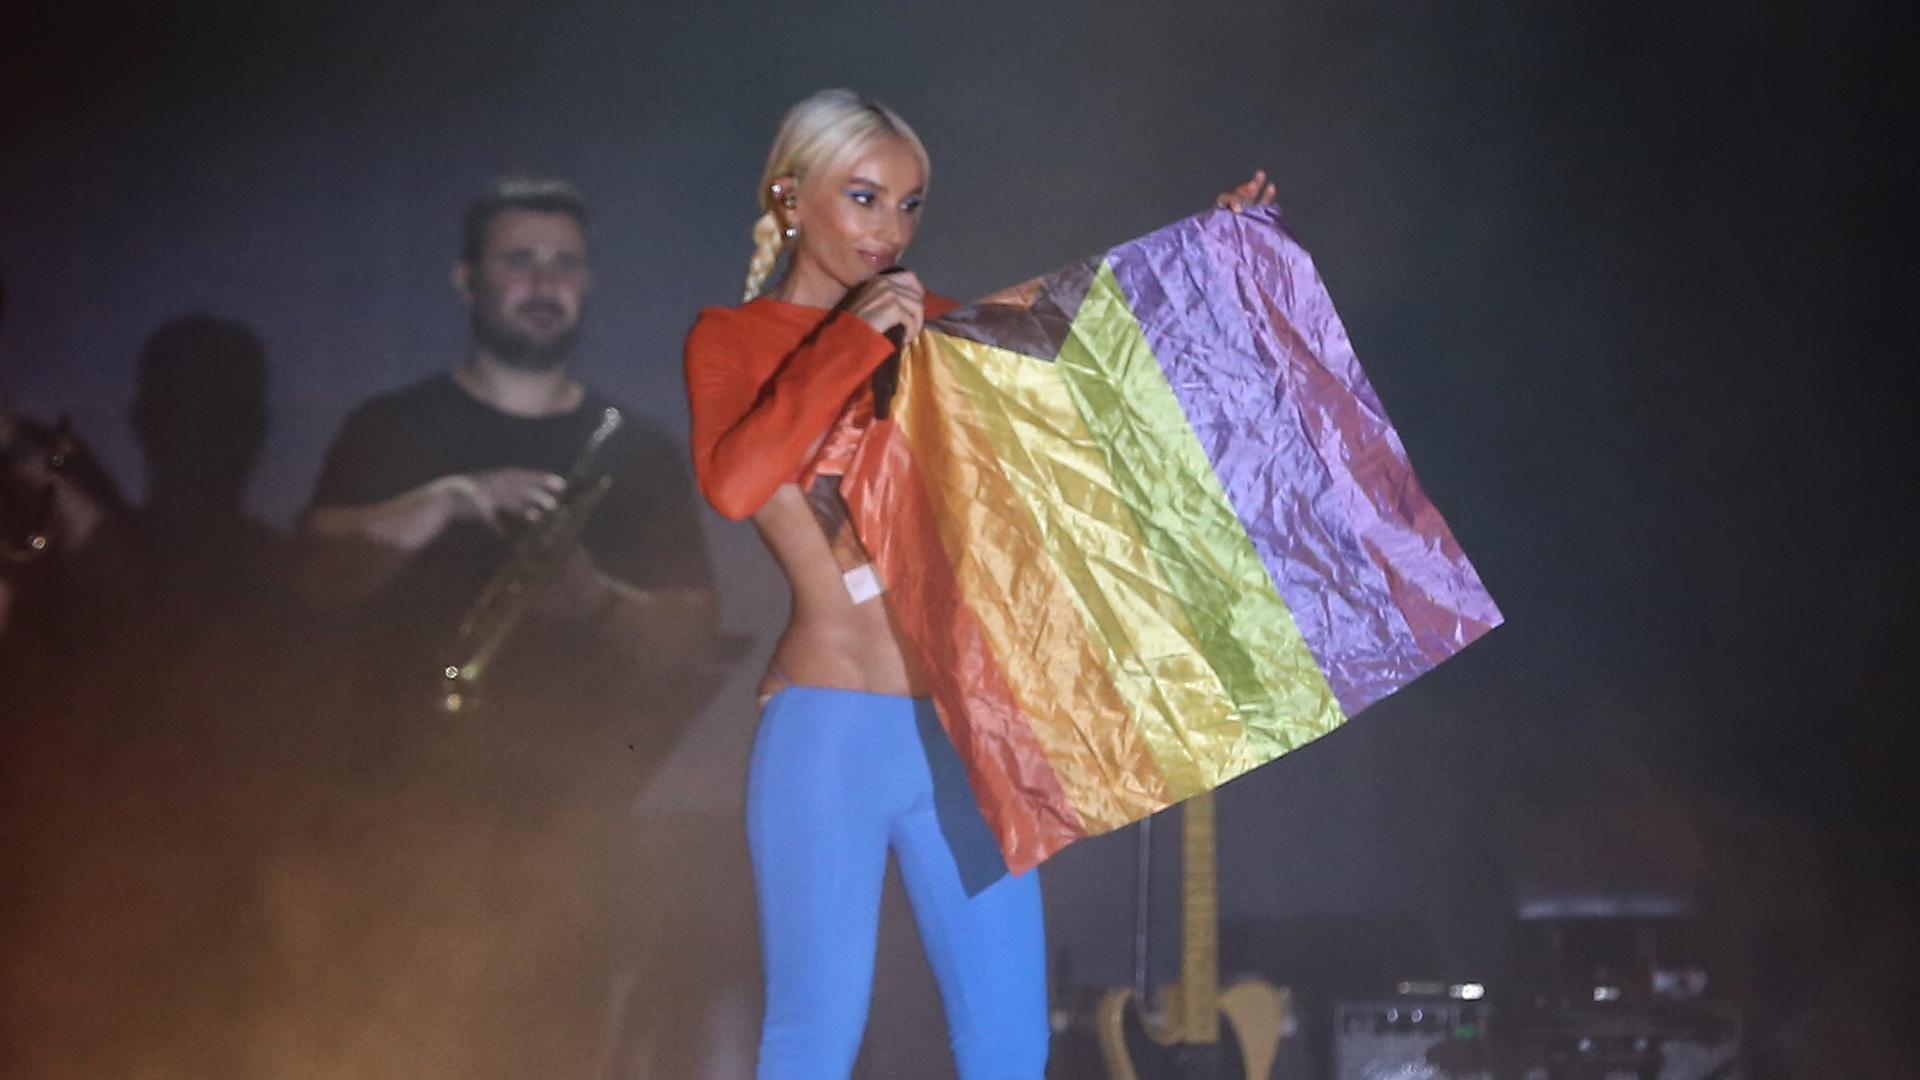 Auch ein farbiges Stück Stoff kann politisch sein: Sängerin Gülşen hält Mitte August 2022 auf einem Konzert in Istanbul die Regenbogenflagge hoch.